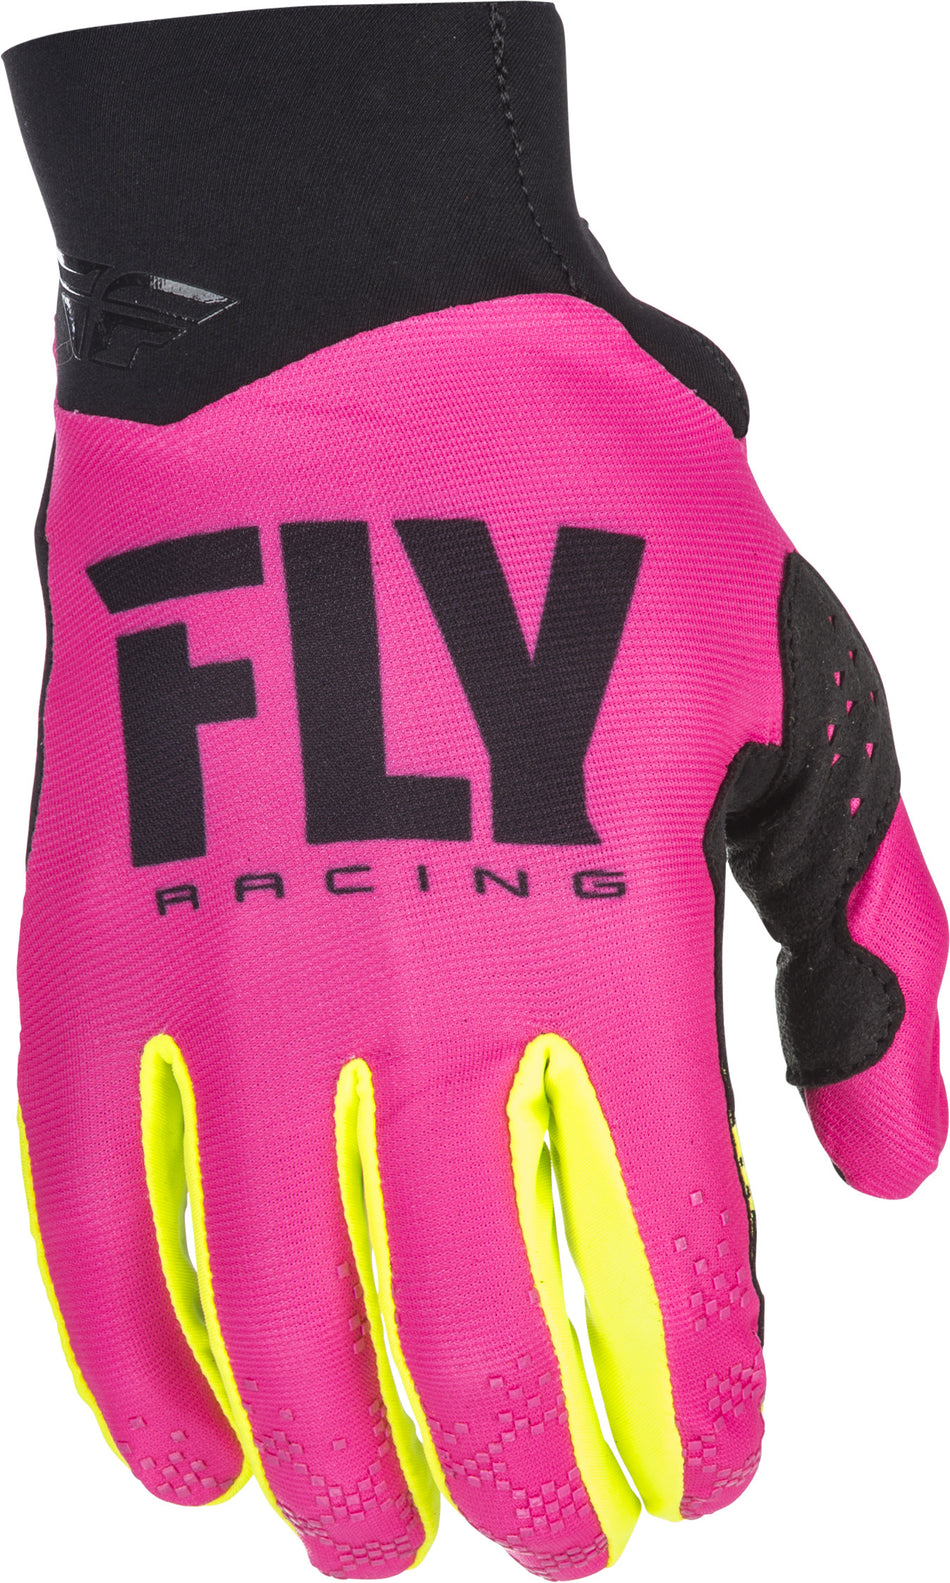 FLY RACING Pro Lite Gloves Neon Pink/Hi-Vis Sz 12 371-81712